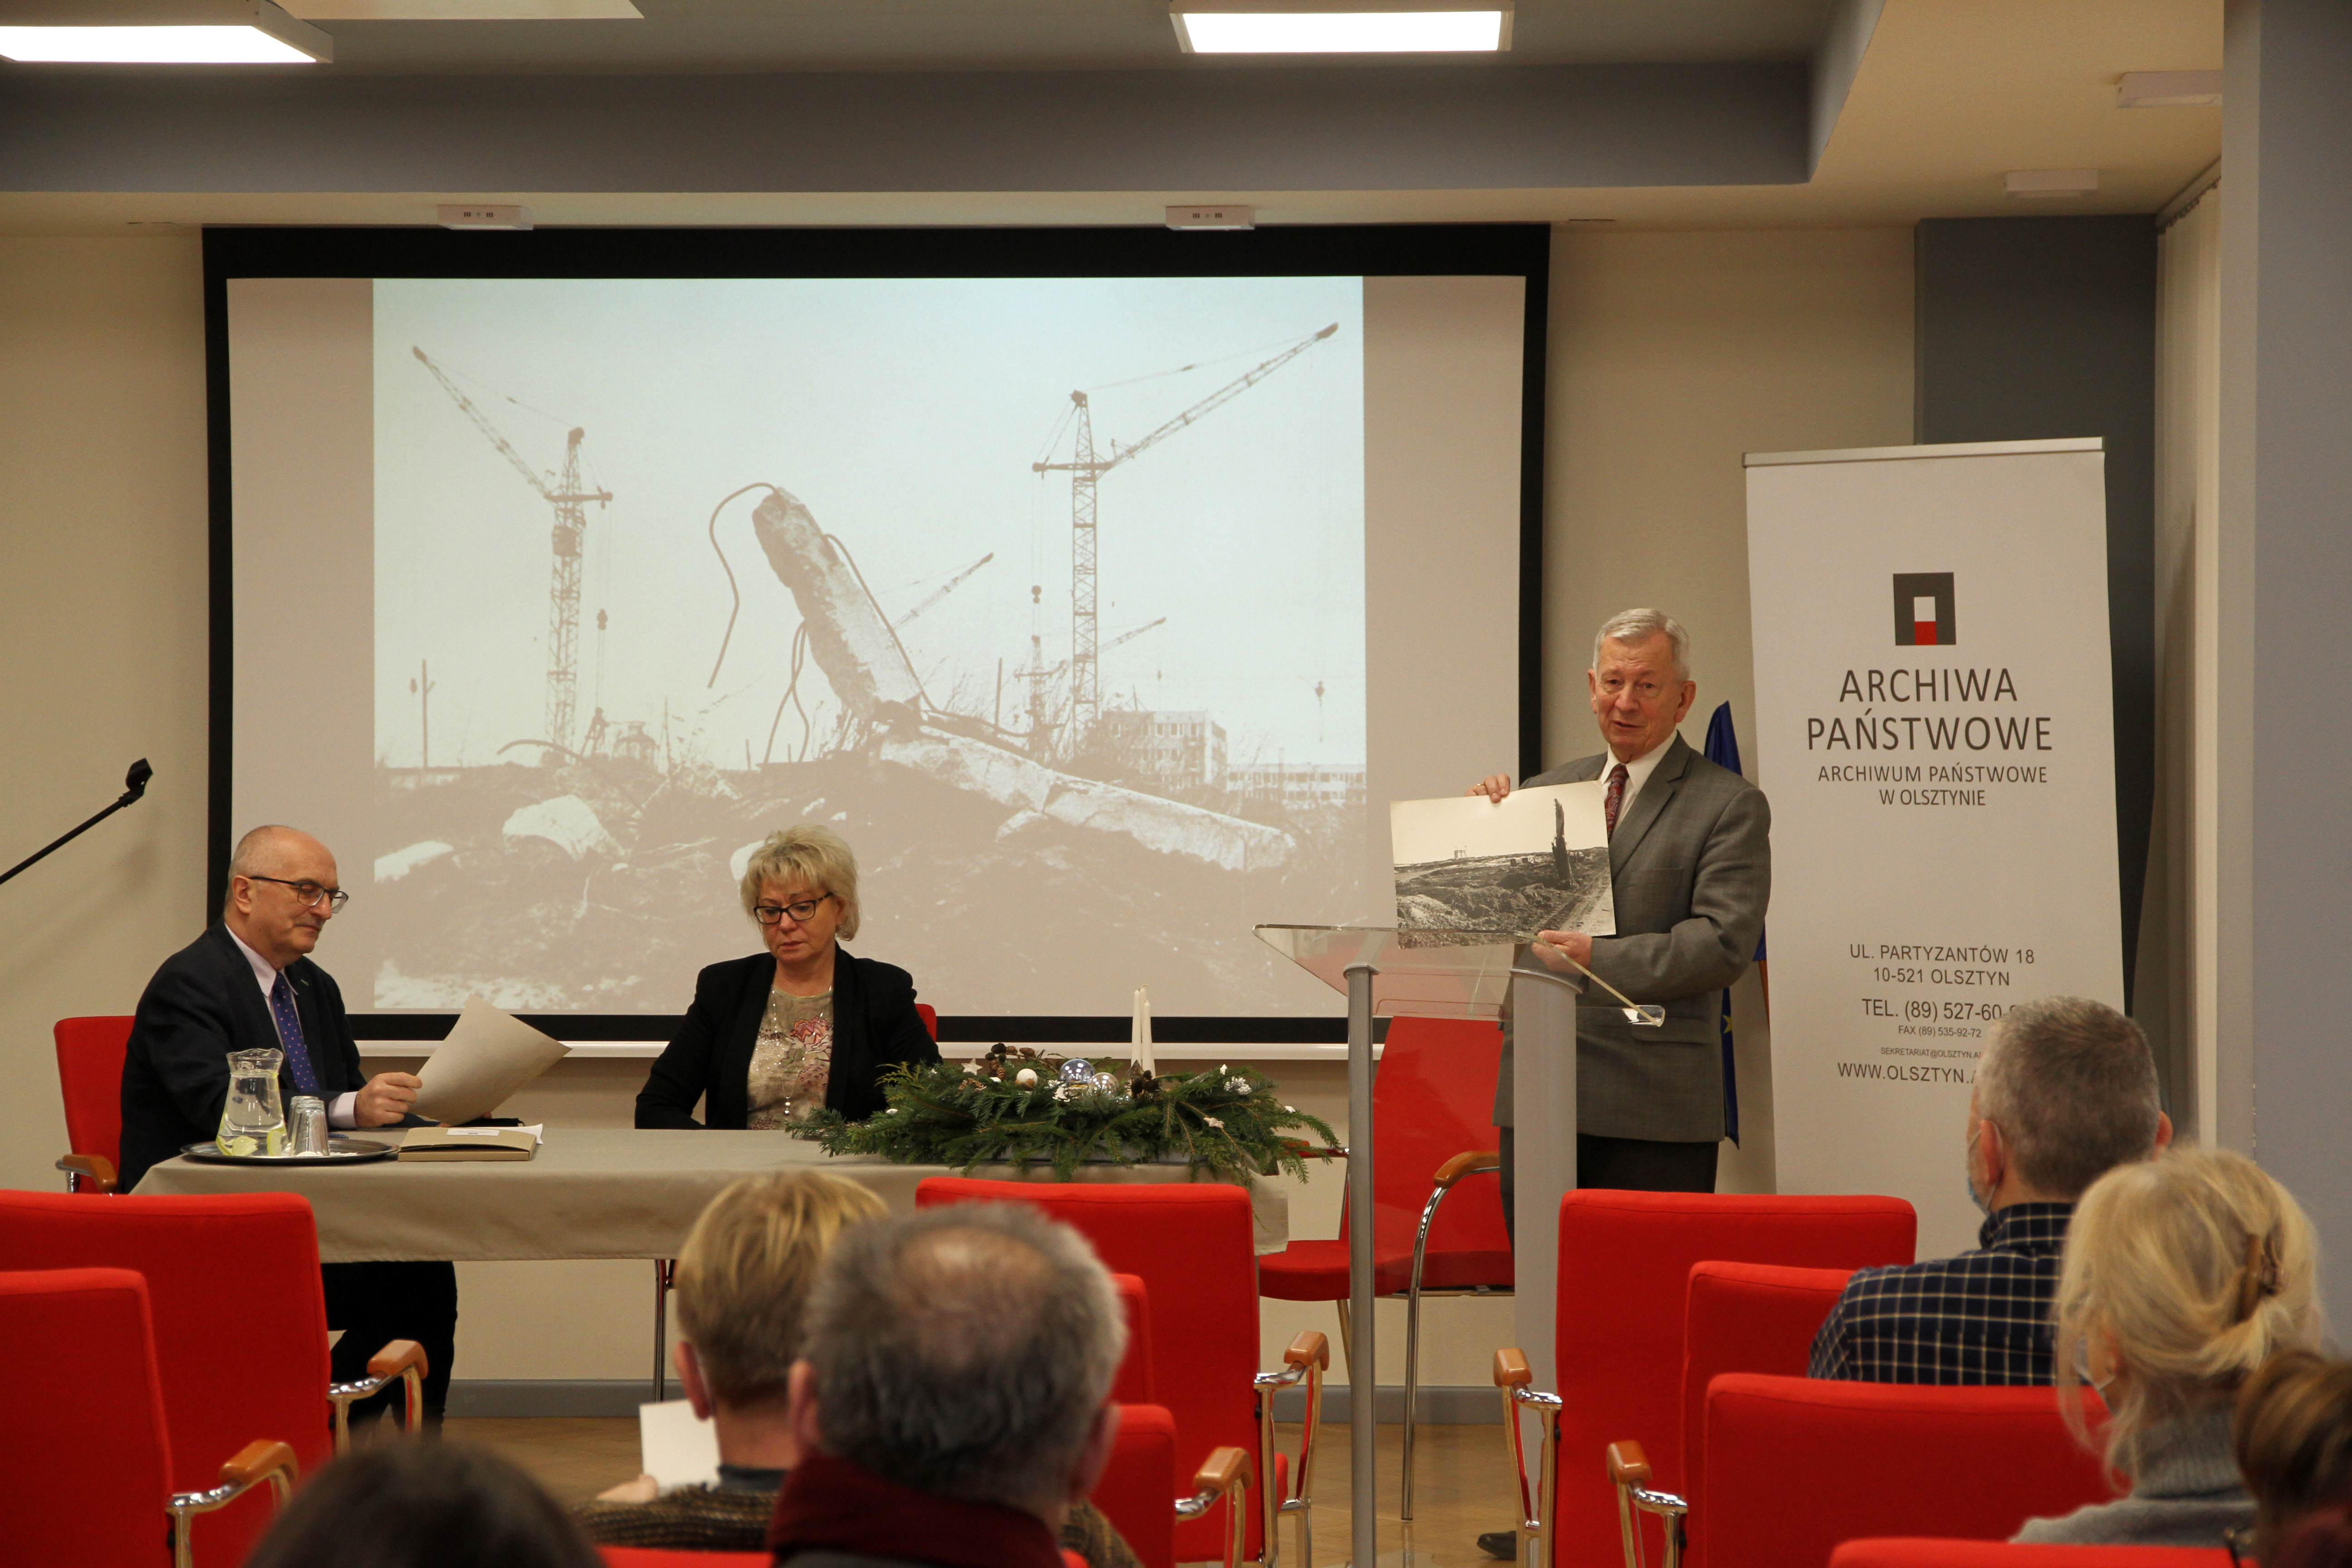 Dyrektor Kasparek i redaktor Gieczewska siedzą za stołem konferencyjnym. Po lewej stoi Roman Przedwojski i prezentuje jedno z przekazanych zdjęć. W tle prezentacja z innymi przekazanymi zdjęciami.